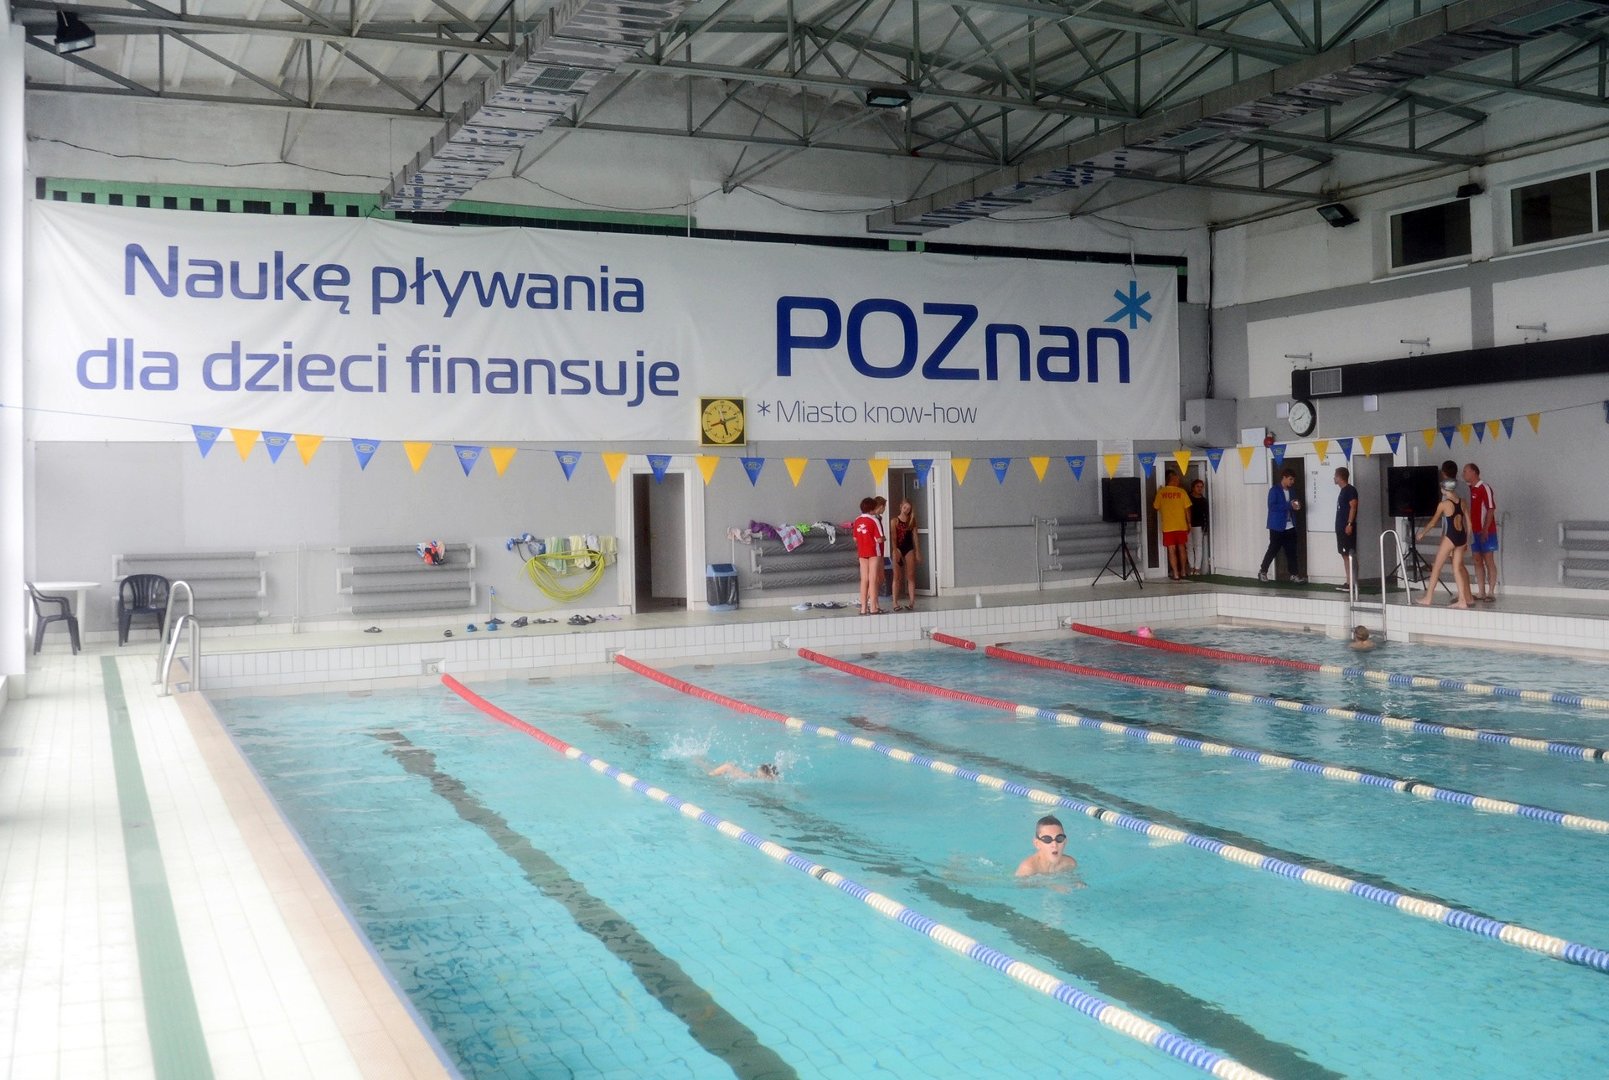 Poznań: Za basen "Posnanii" płaci miasto, a zysk czerpie stowarzyszenie  "Razem dla sportu" założone przez nauczycieli | Głos Wielkopolski